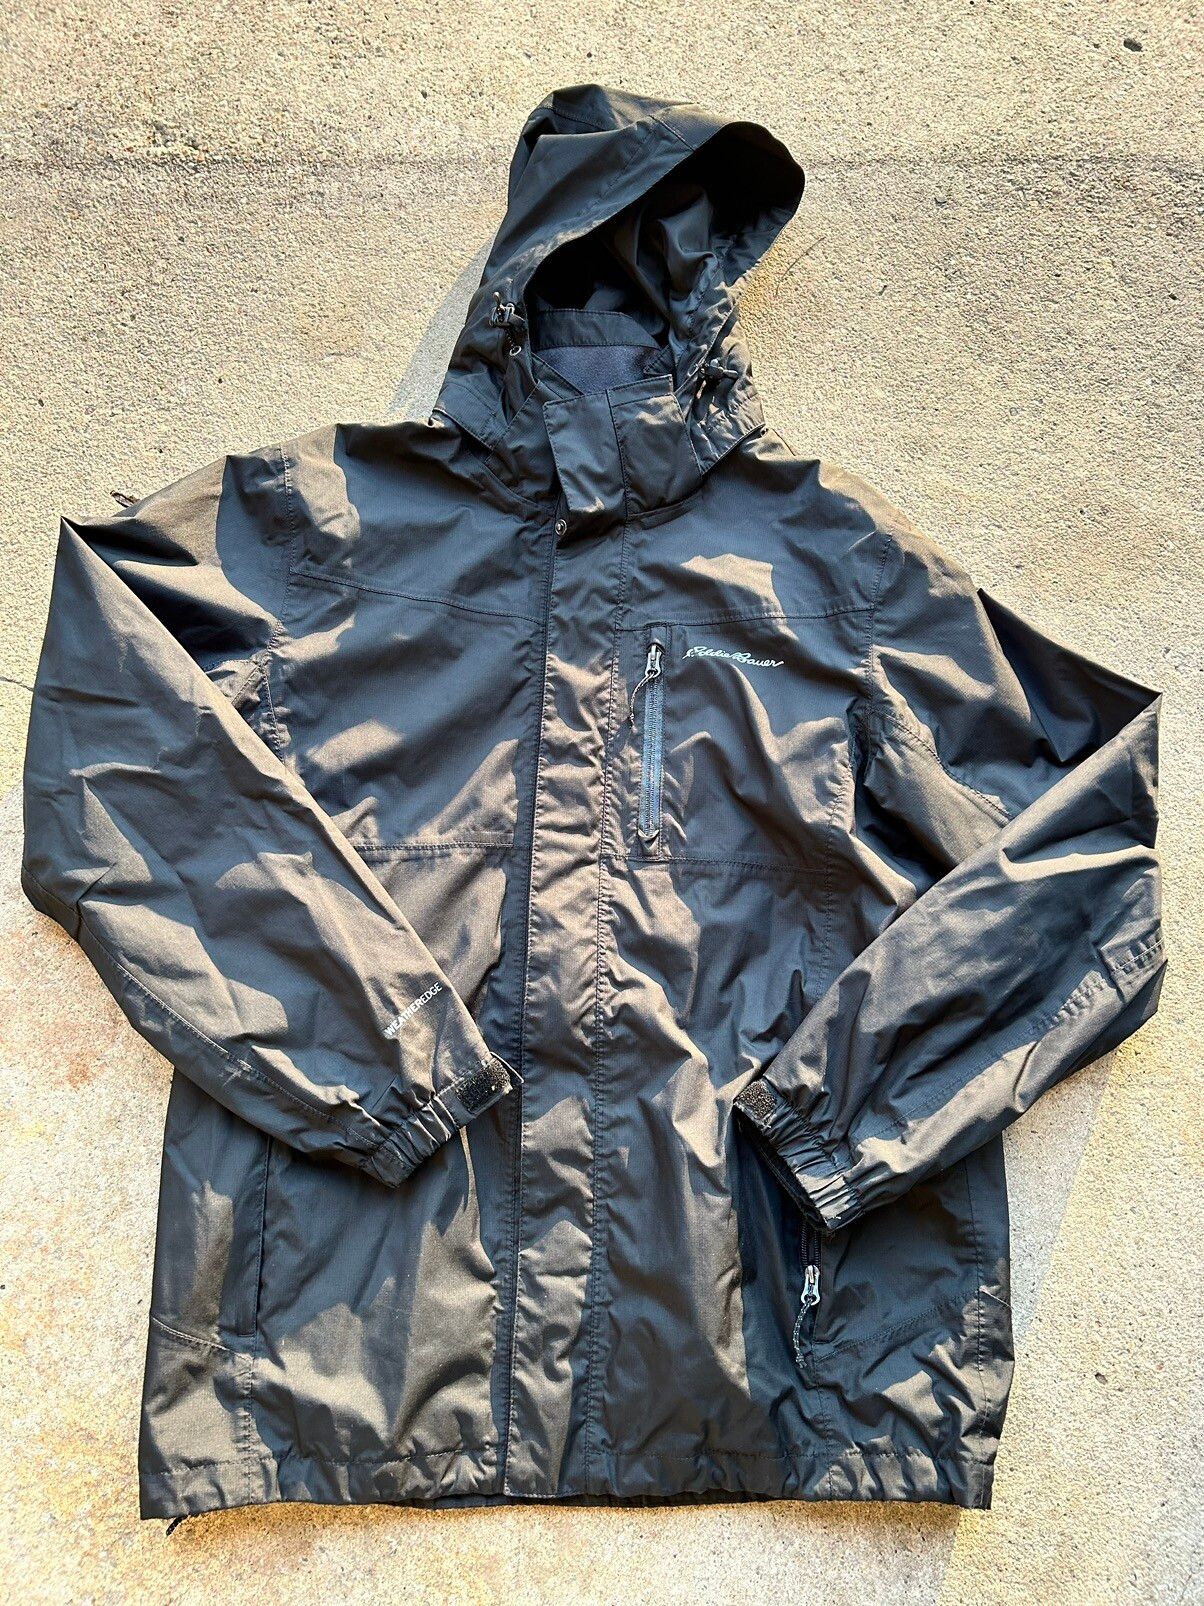 Eddie Bauer Eddie Bauer Jacket/Raincoat | Grailed